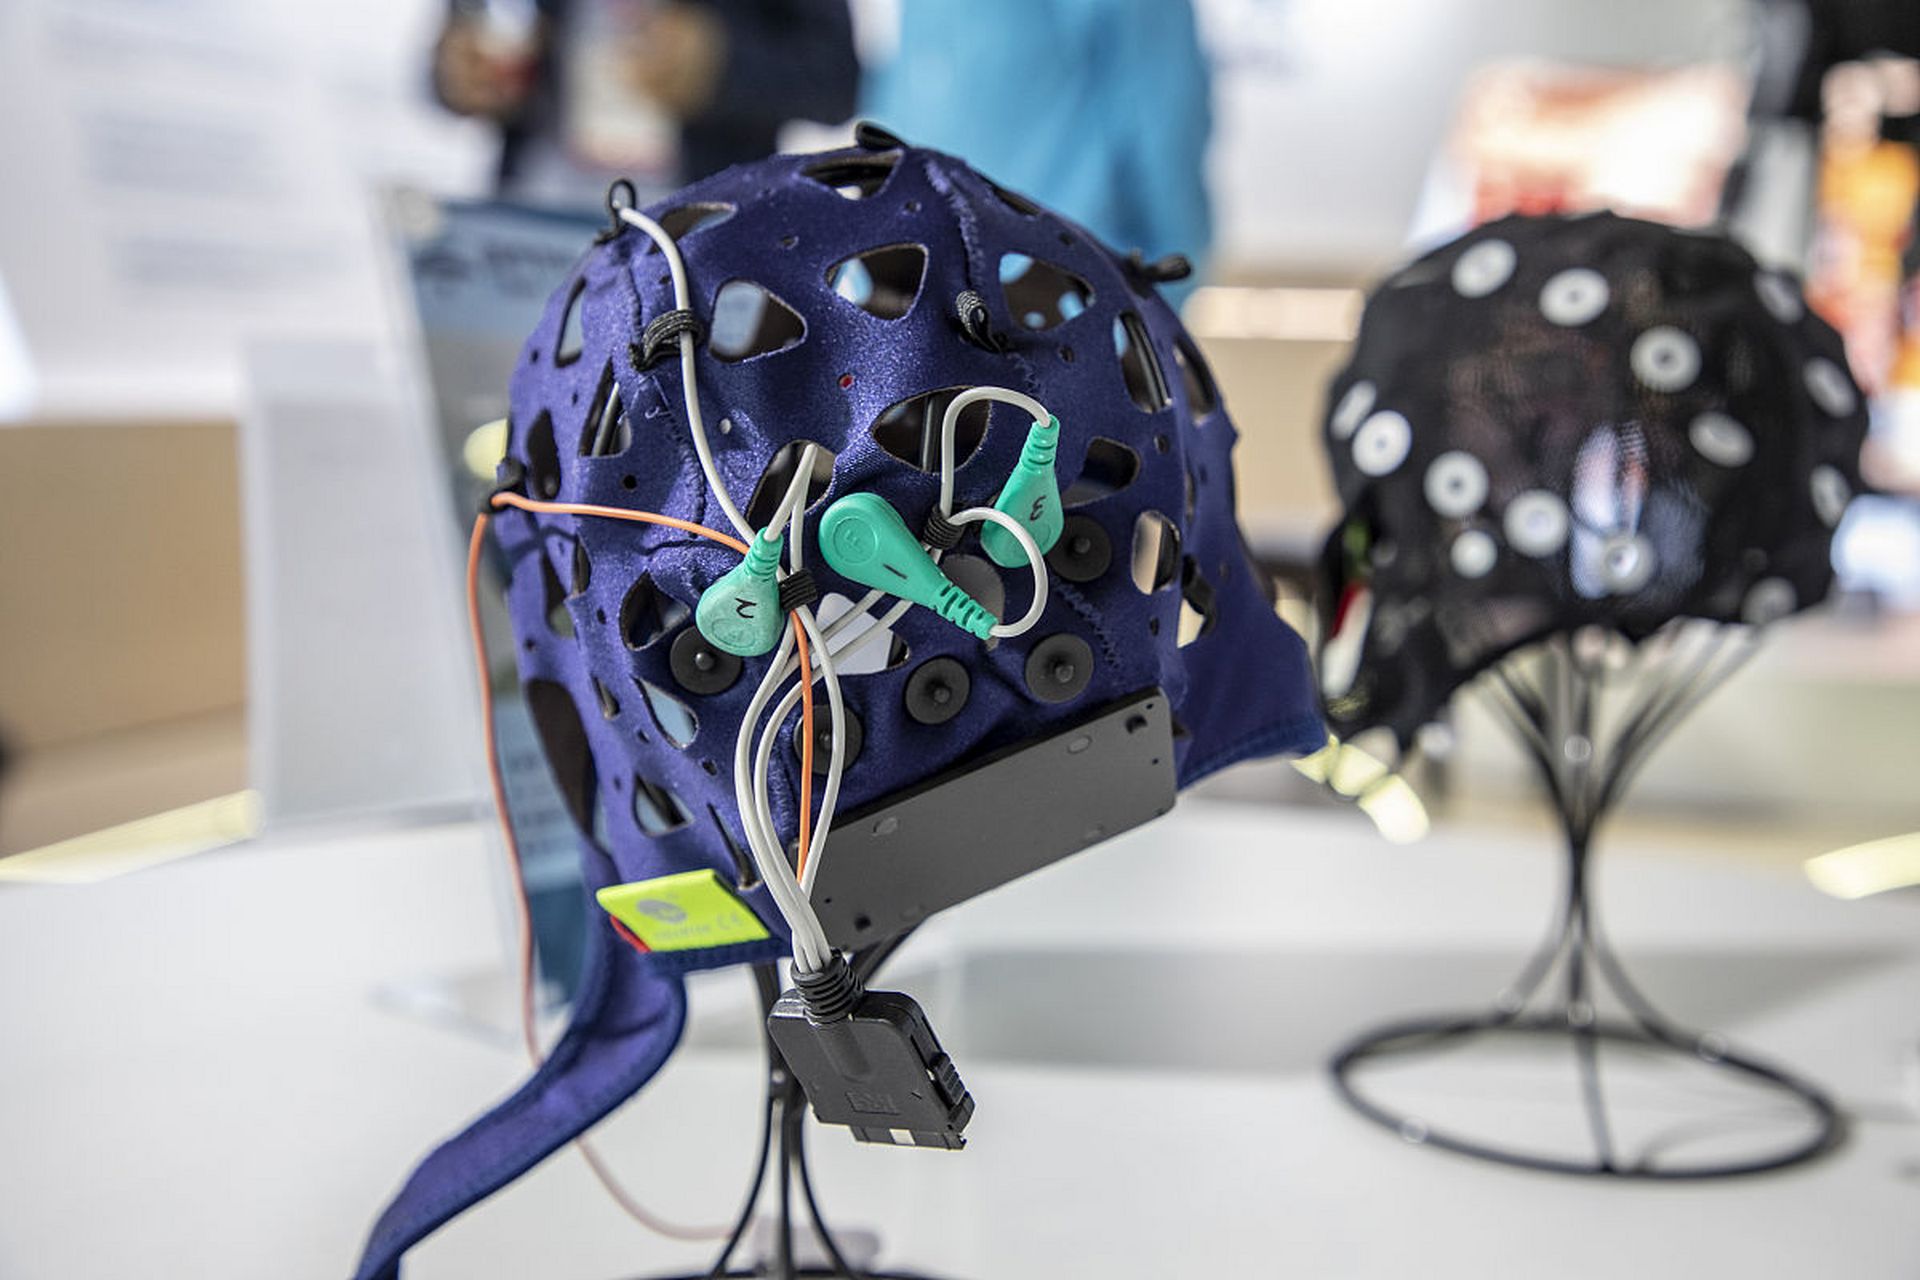 特斯拉创始人马斯克创办的脑机接口公司neuralink近日宣布,获得美国